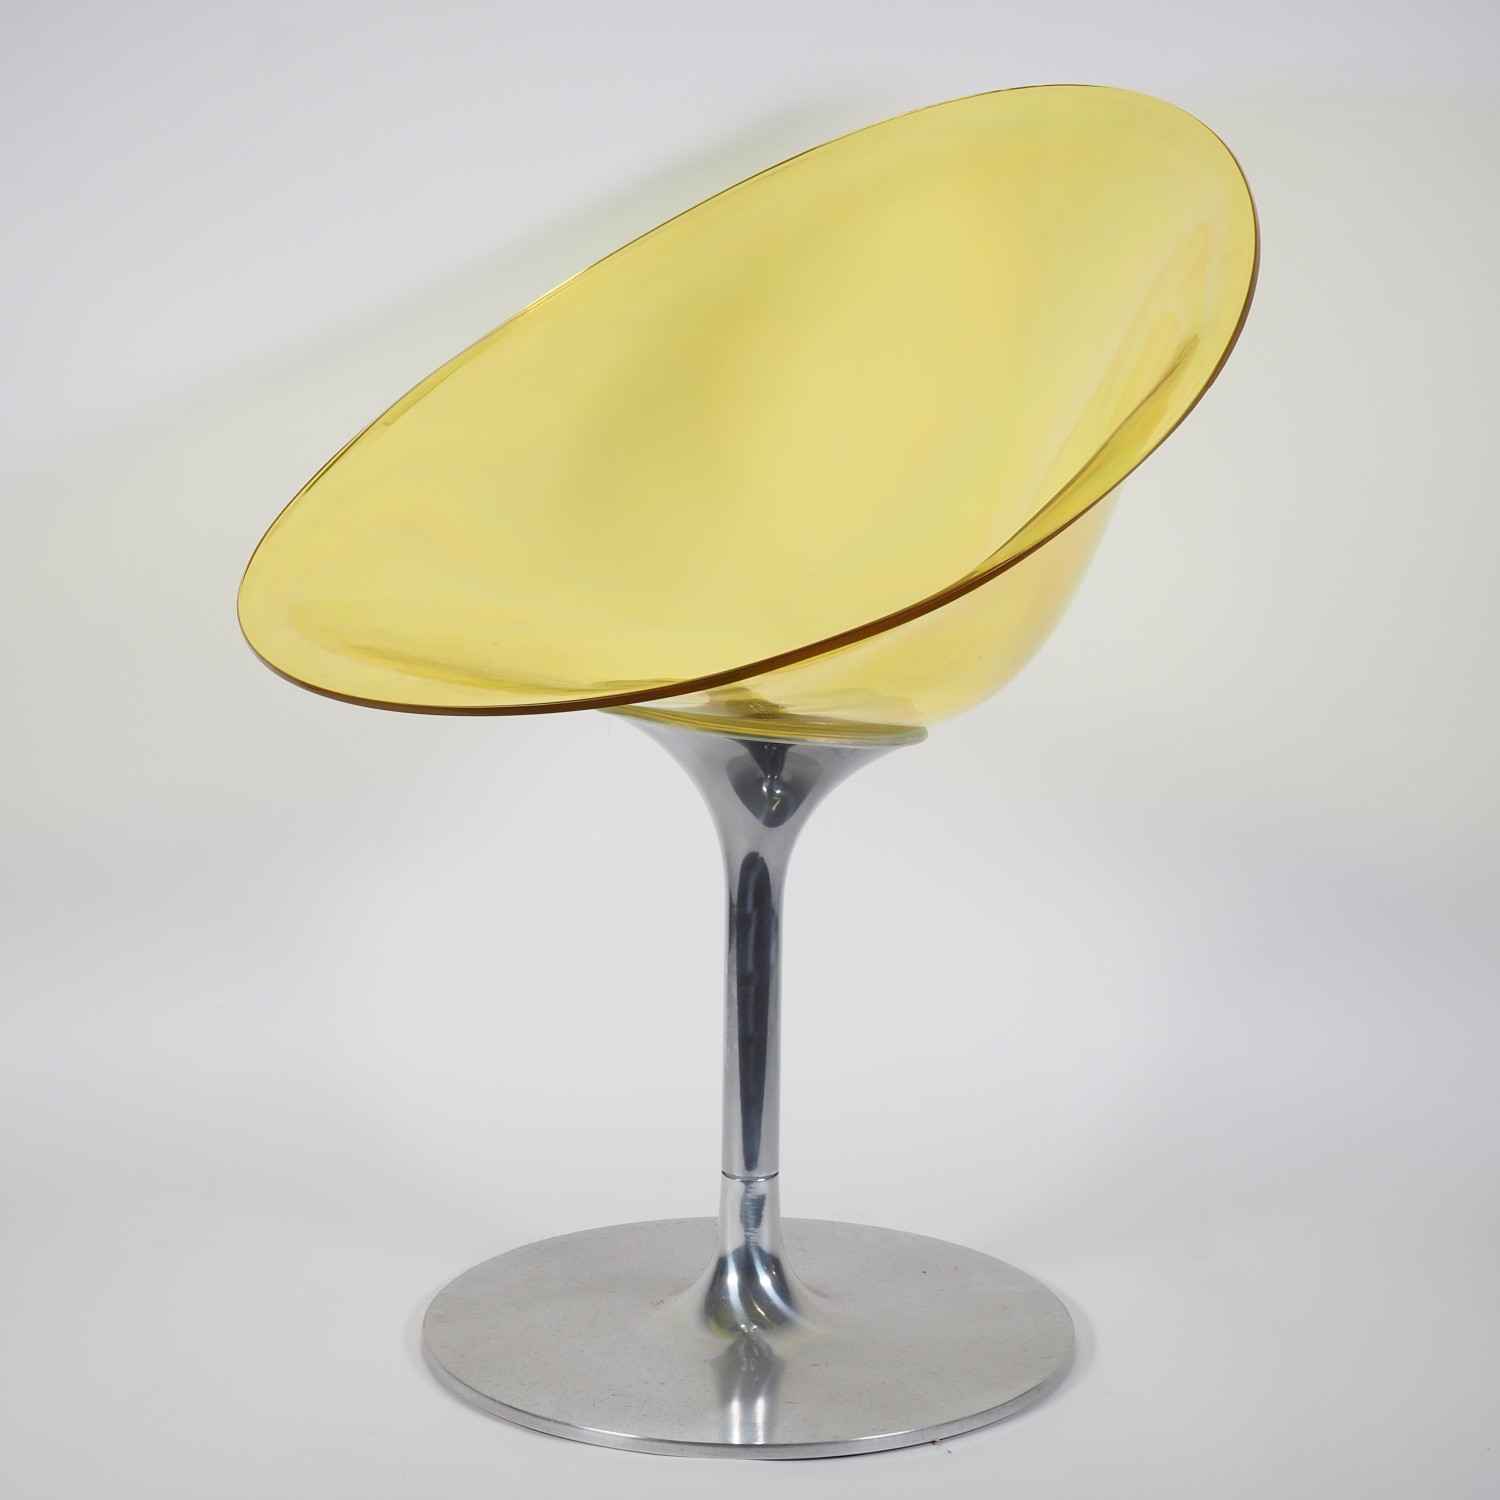 Kartell Ero S designer swivel chair - design by Philippe Starck 